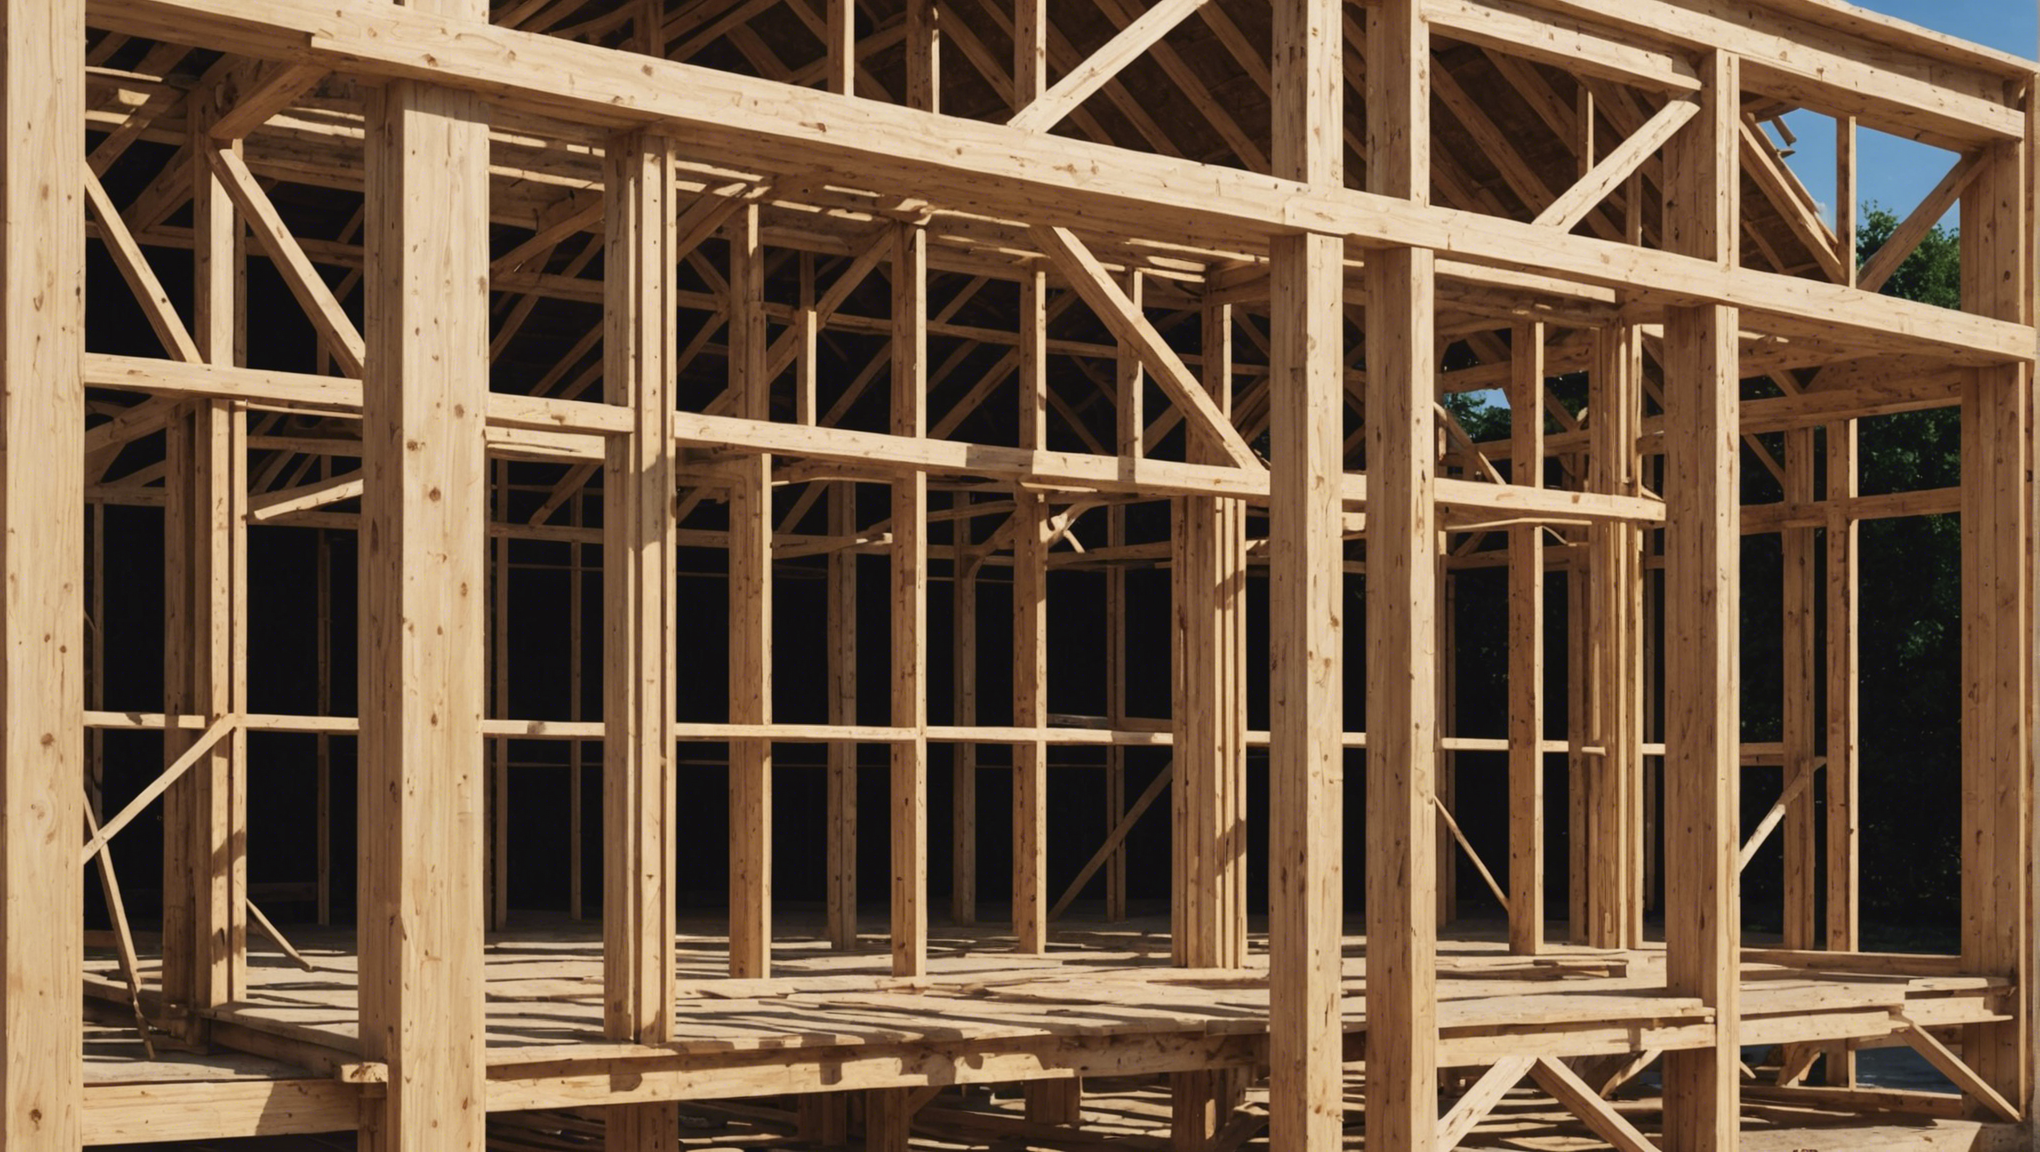 découvrez les avantages de la construction en bois et les raisons pour lesquelles vous devriez choisir ce matériau pour vos projets de construction. des arguments solides en faveur du bois comme matériau de construction écologique et durable.